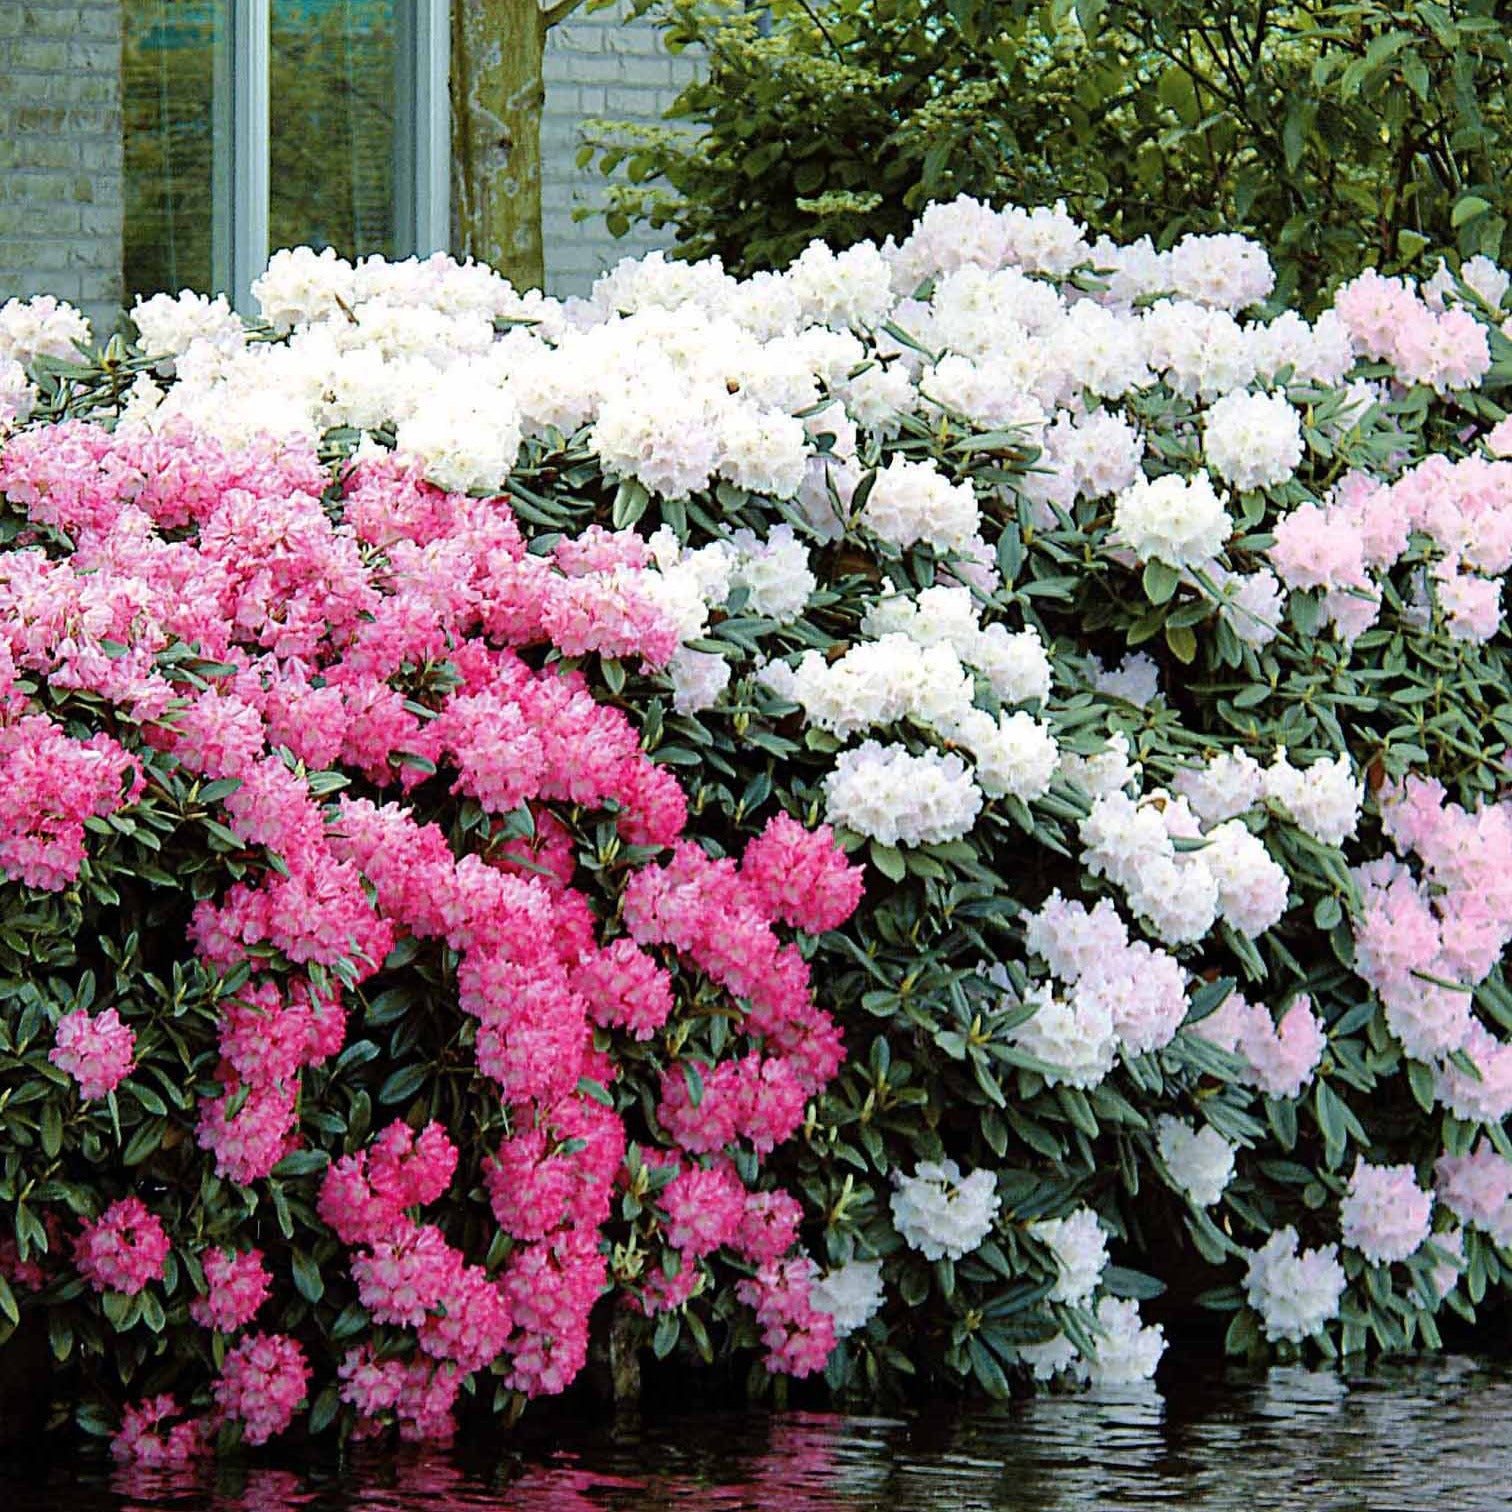 Rhododendron Cunningham's White - Bakker.com | France